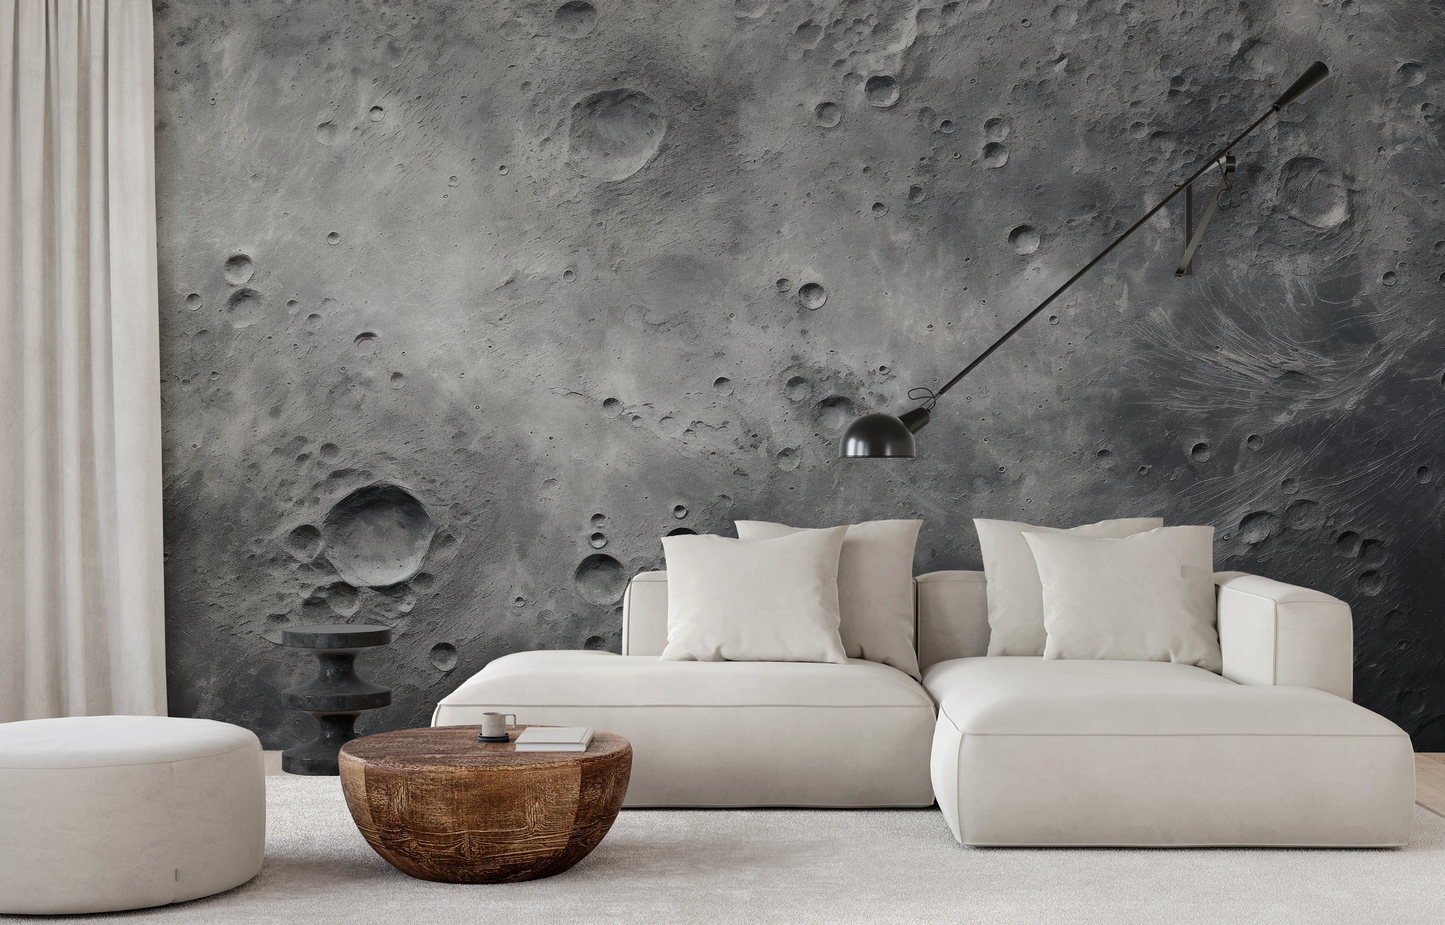 Fototapeta malowana o nazwie Lunar Surface pokazana w aranżacji wnętrza.